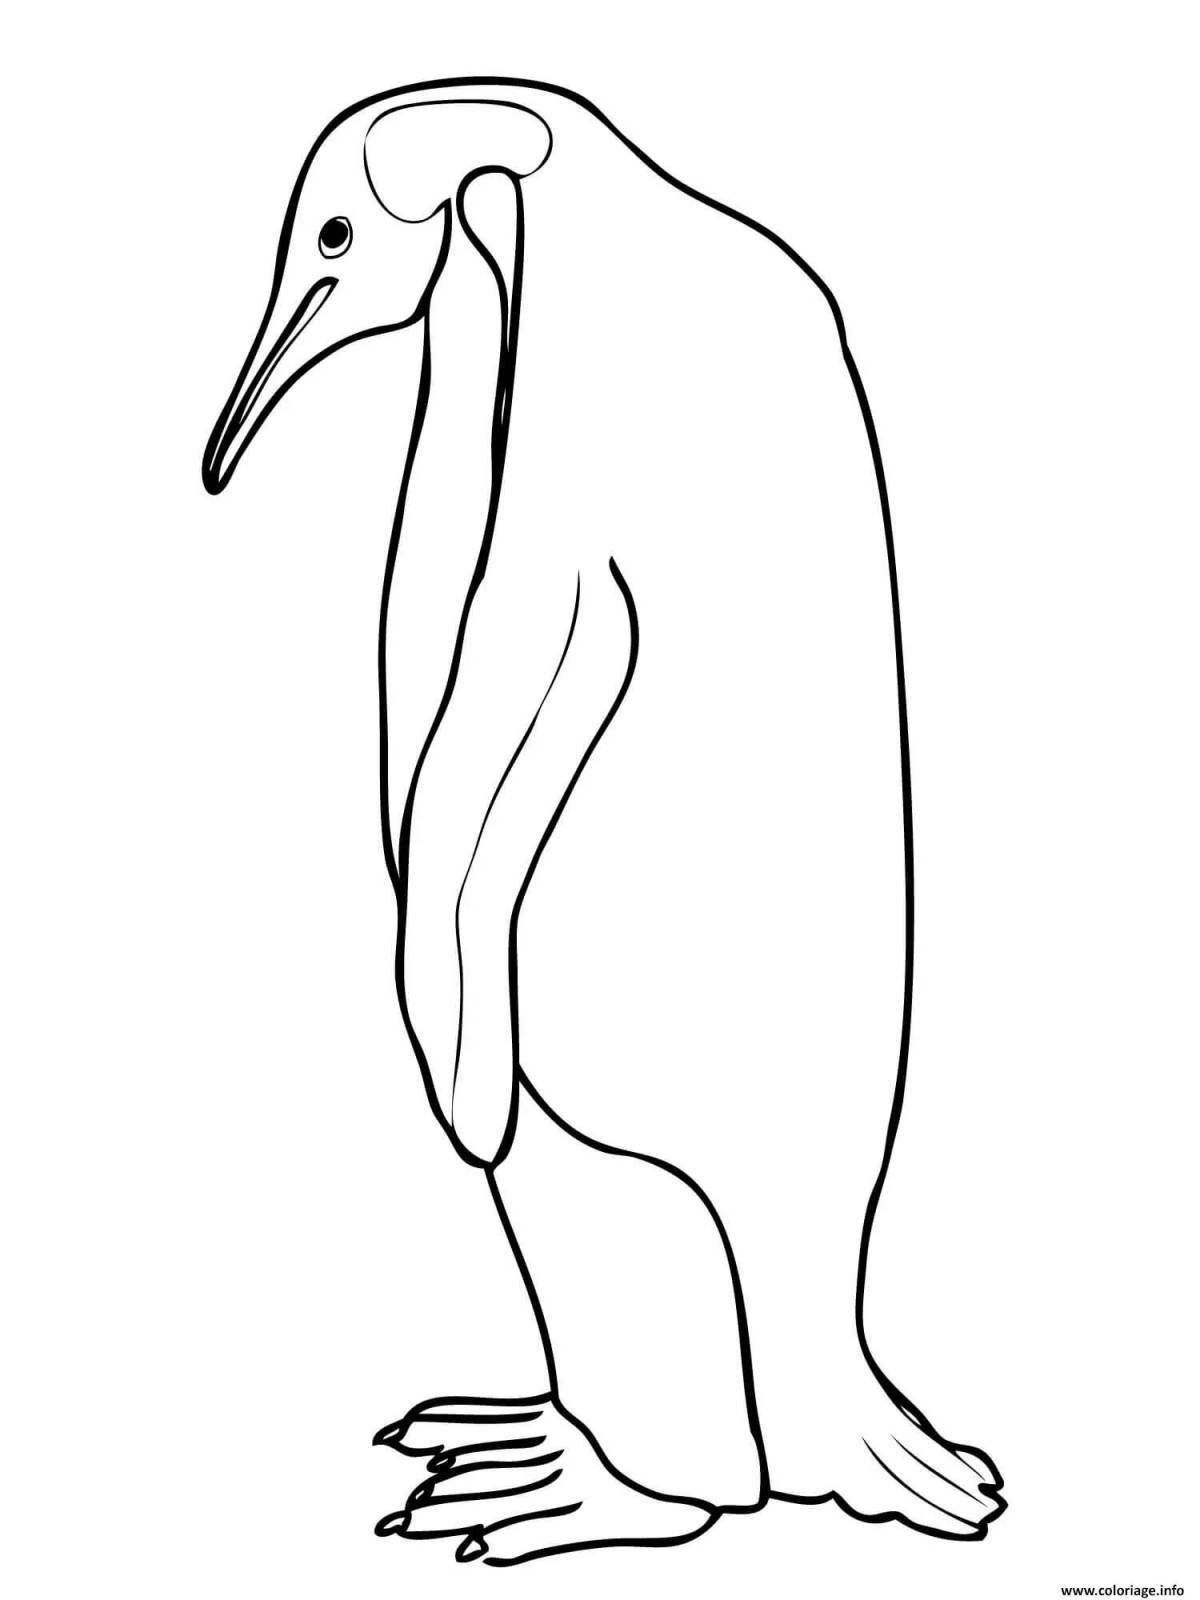 Hypnotic emperor penguin coloring page